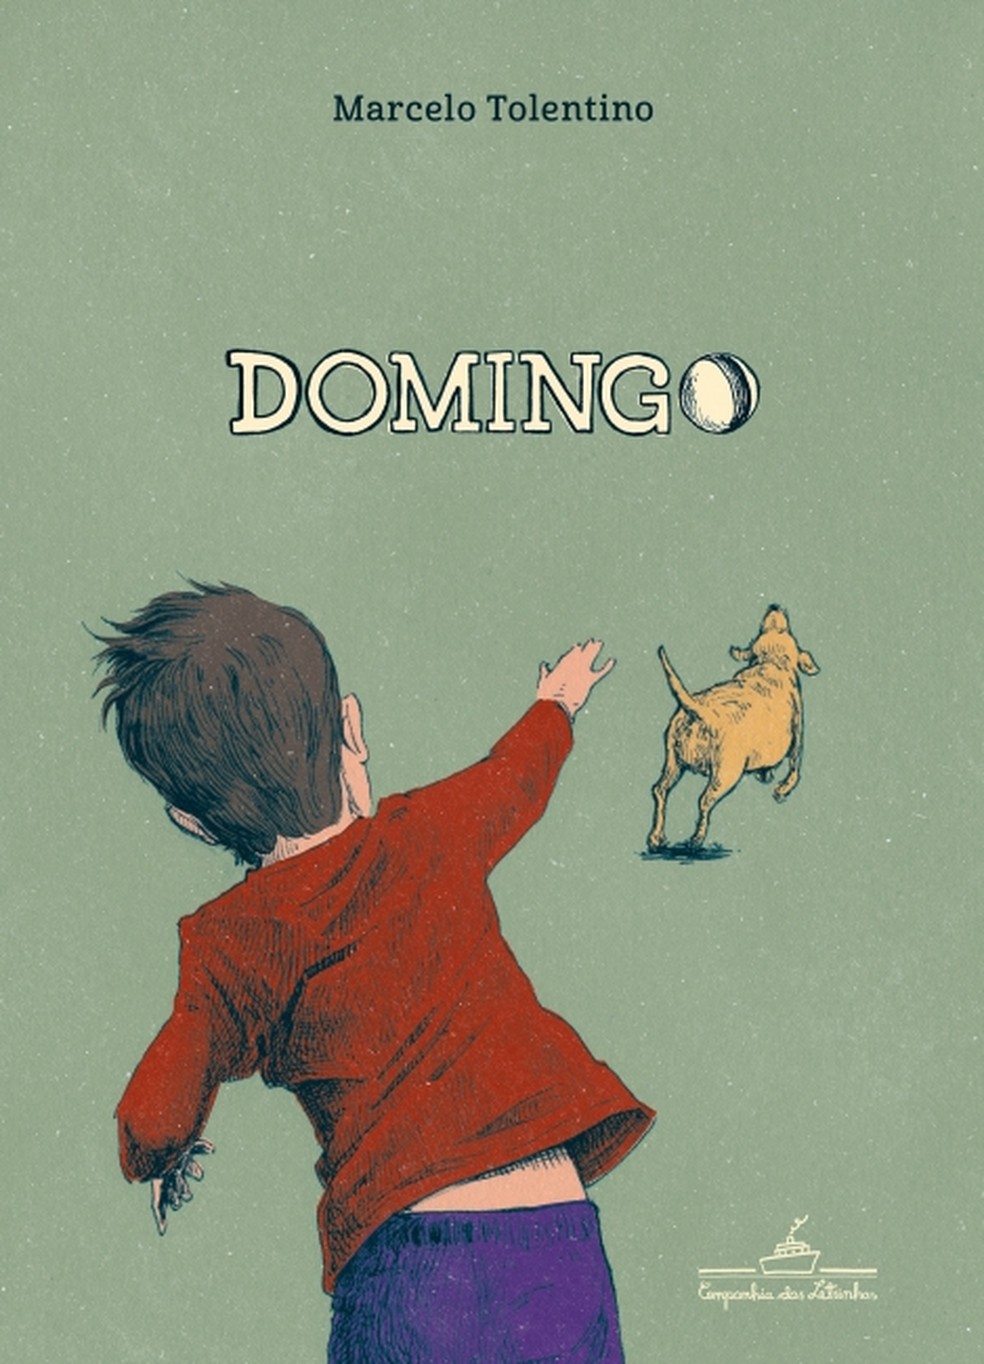 Livro infantil Domingo, de Marcelo Tolentino — Foto: Divulgação